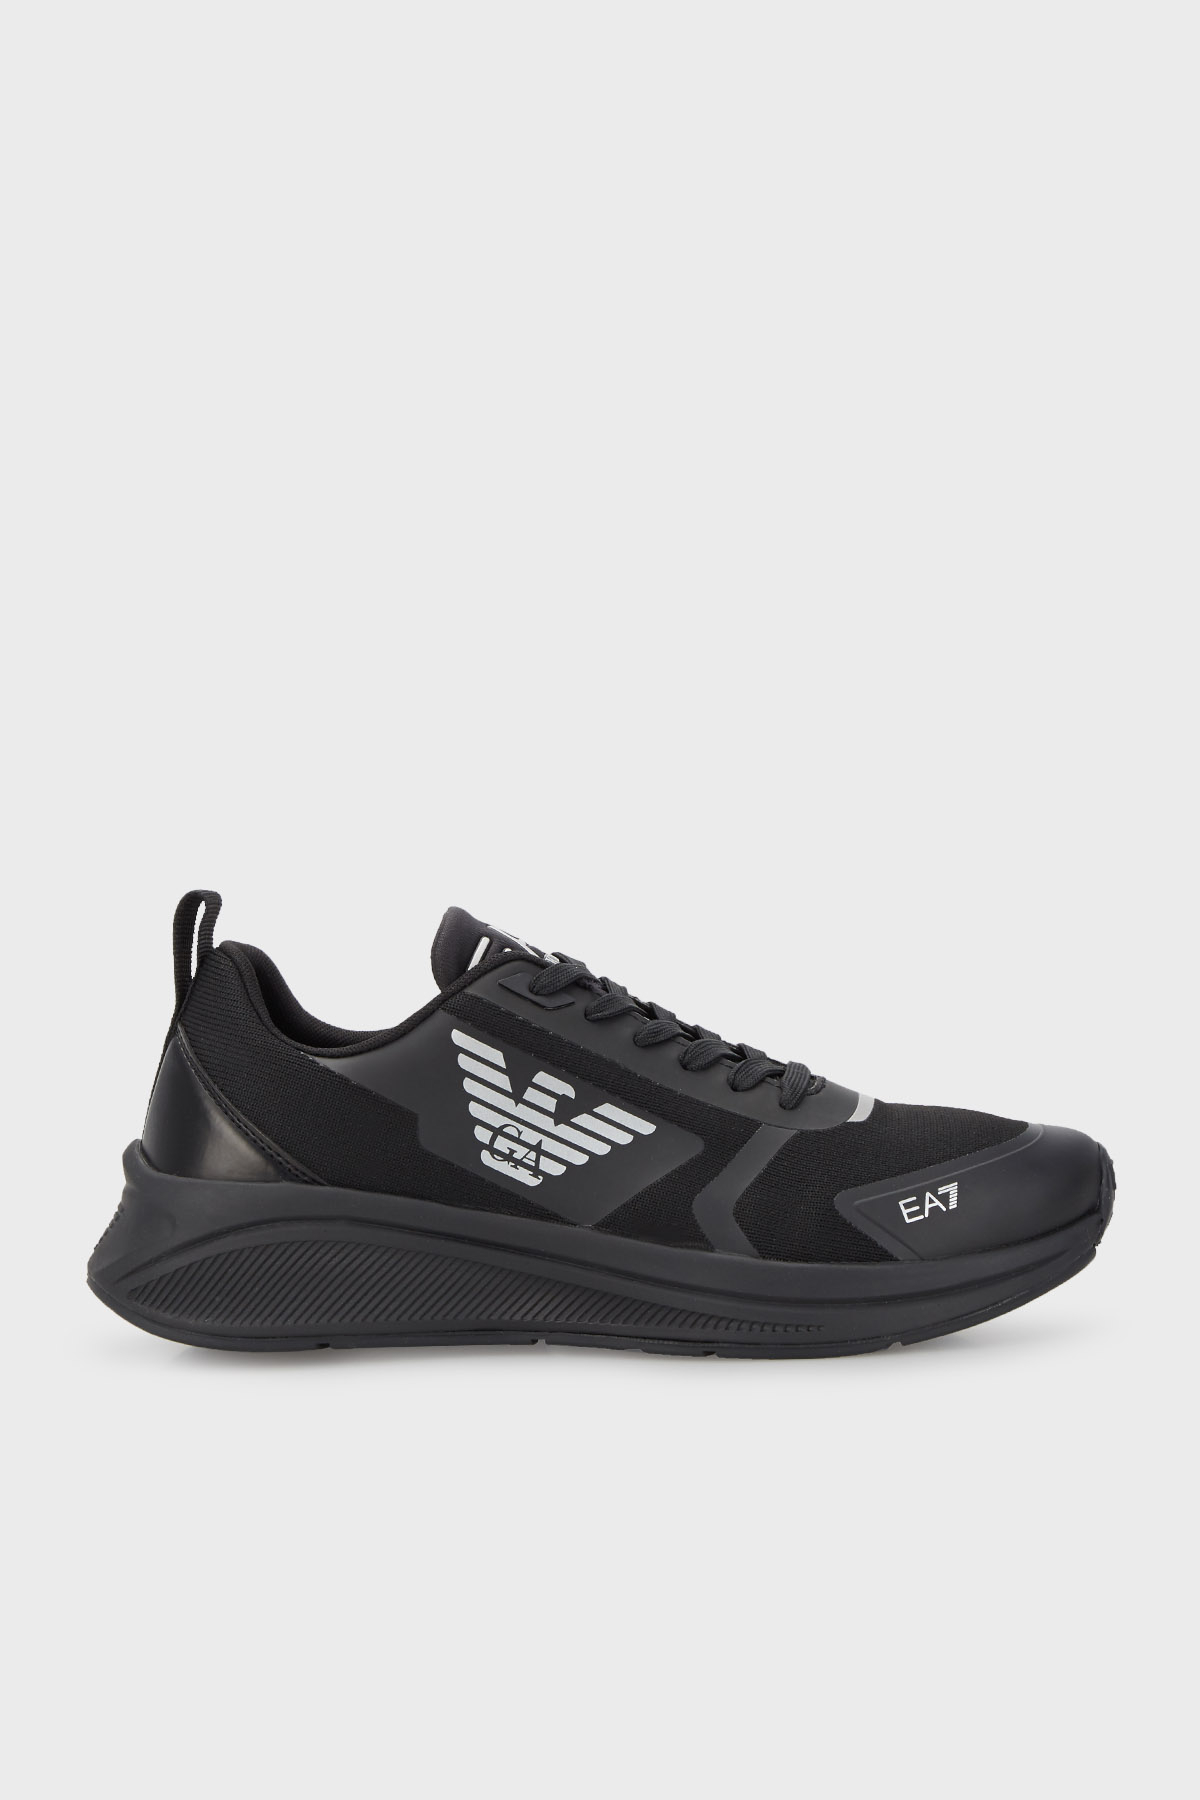 EA7 Logolu Sneaker Unisex Ayakkabı X8X126 XK304 M826 SİYAH